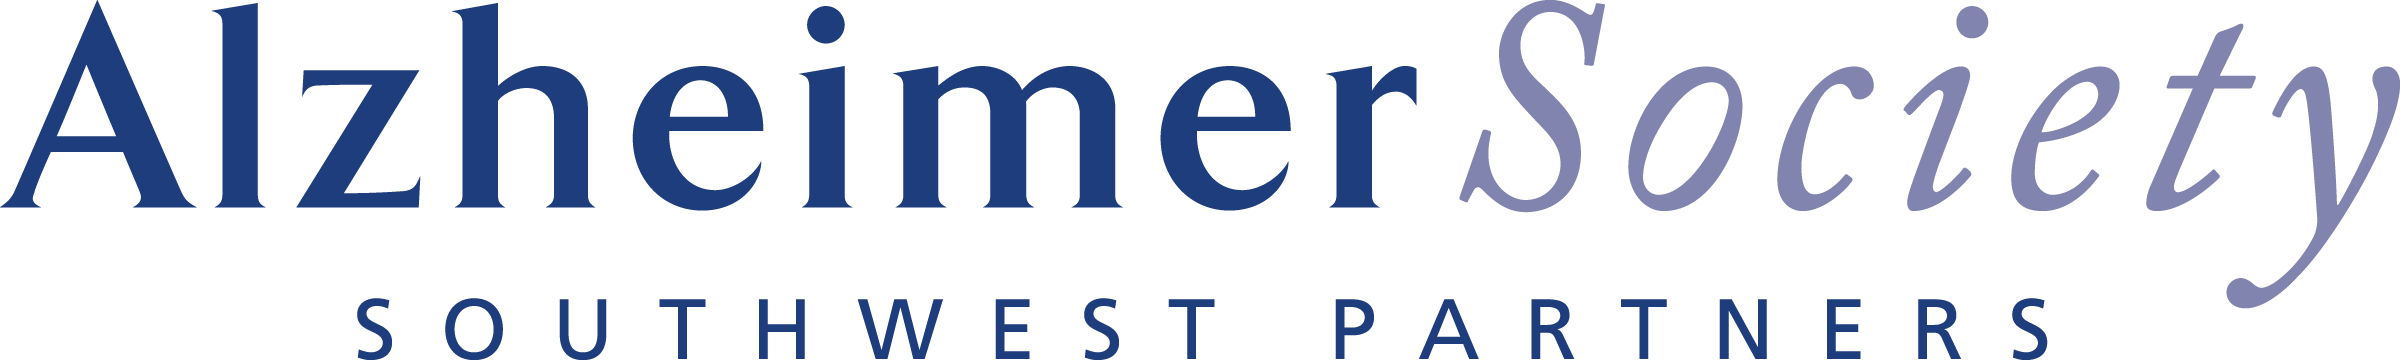  Alzheimer Society Southwest Partners  logo